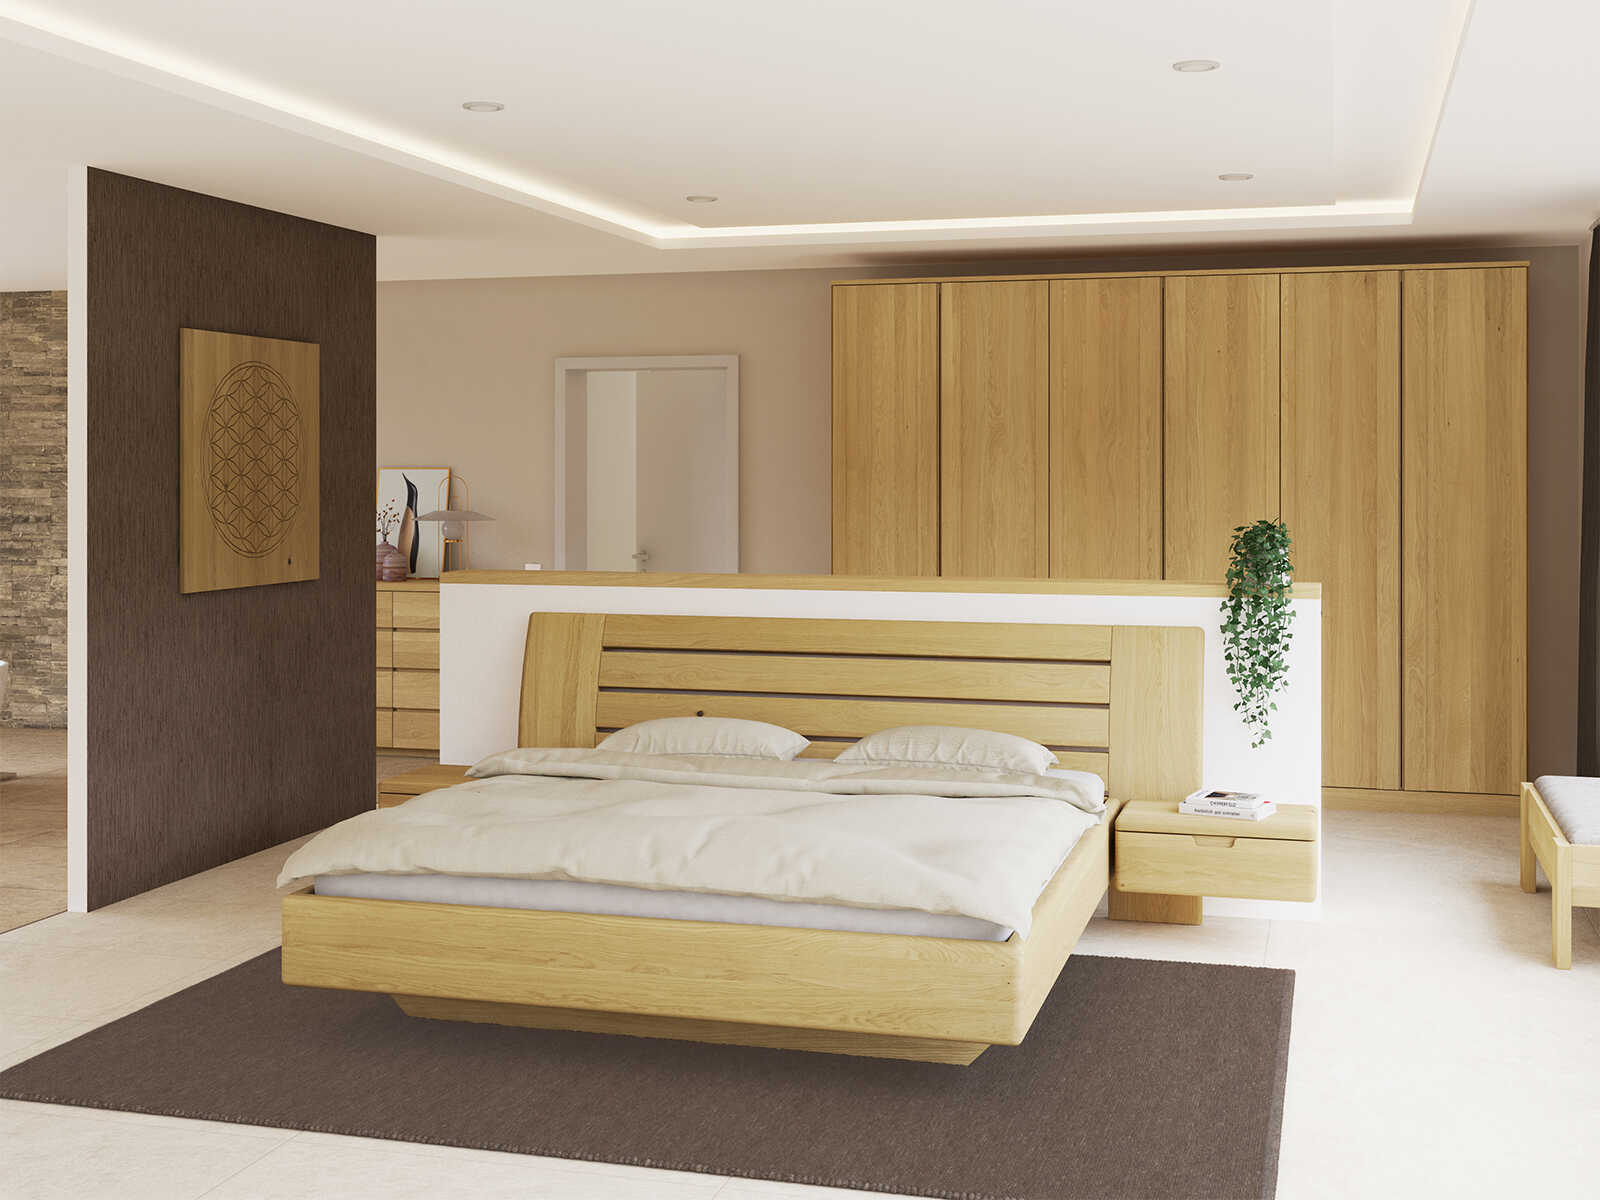 Schlafzimmer mit Bett „Bettina“ aus Eiche Hell in 180 x 200 cm, mit zwei Nachttische (60 cm breit)